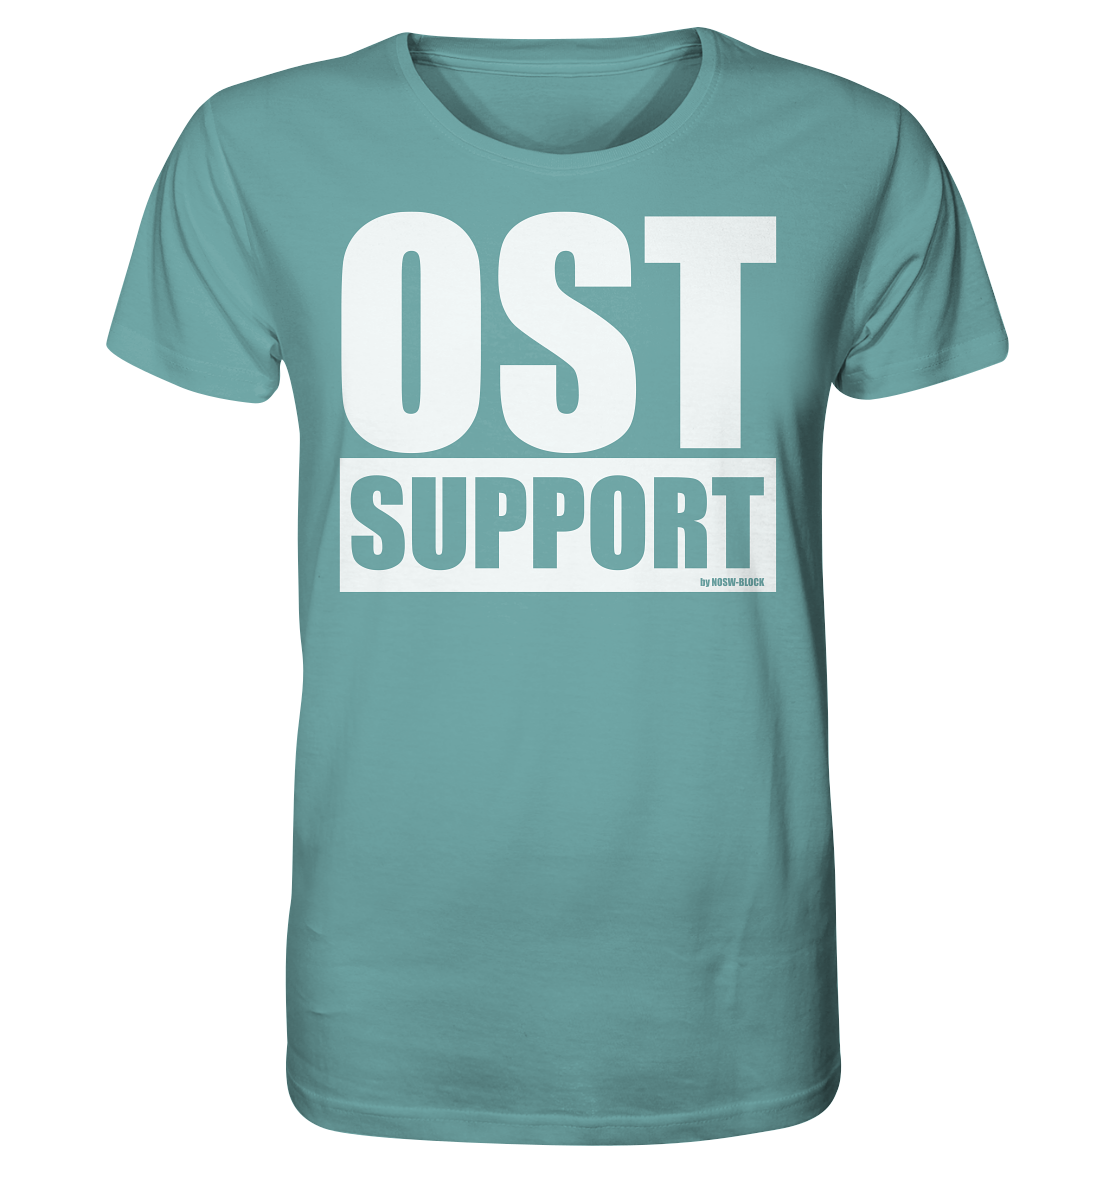 N.O.S.W. BLOCK Fanblock Shirt "OST SUPPORT" Männer Organic Rundhals T-Shirt citadel blue